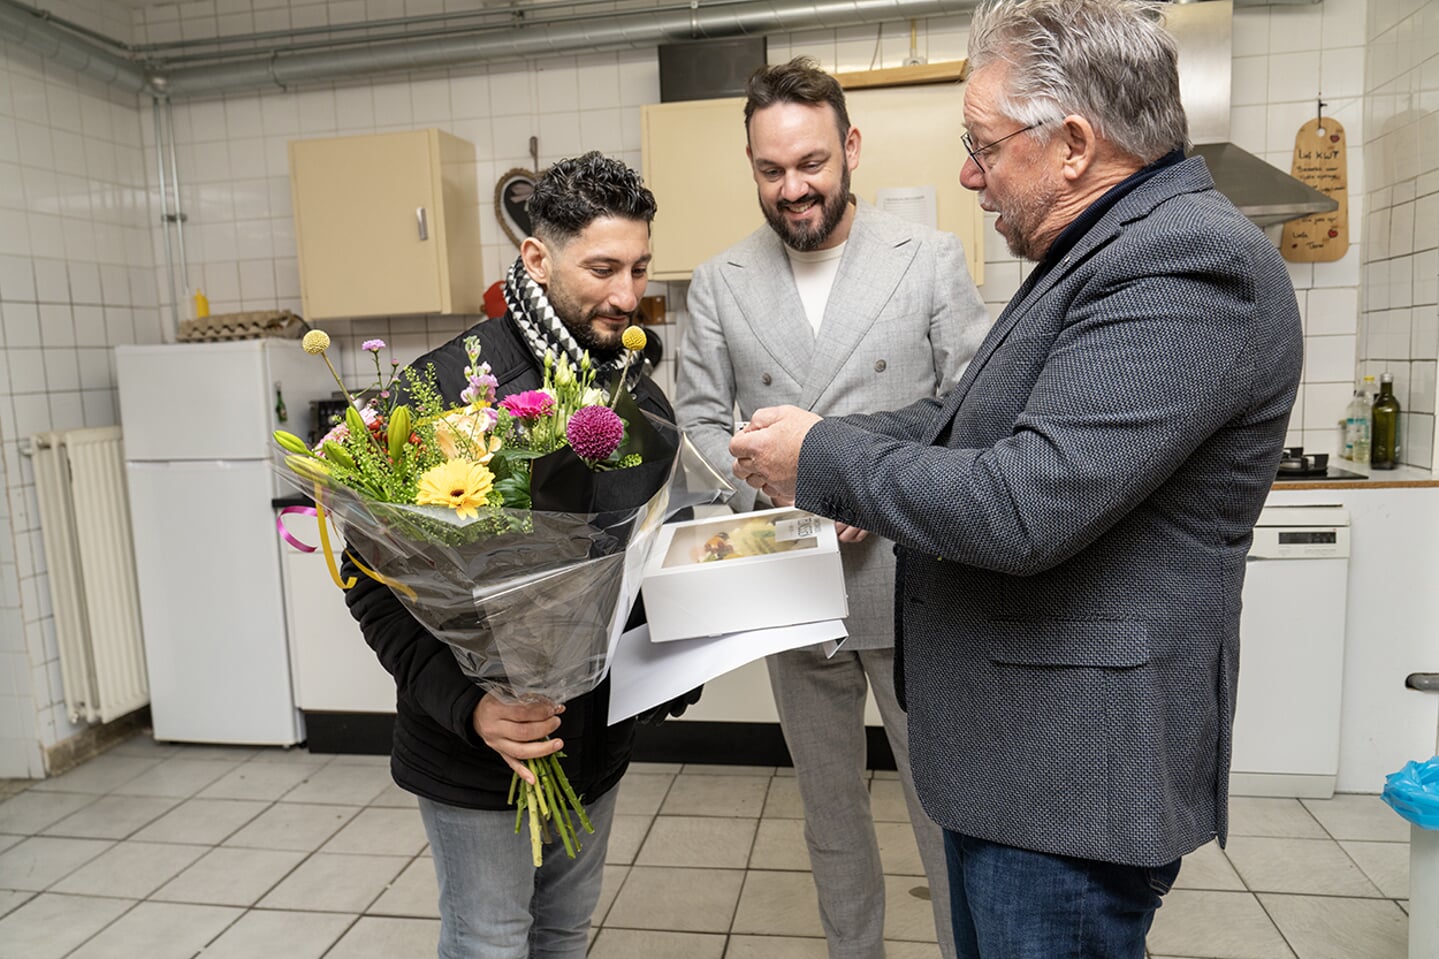 Genomineerde Toufic Al Arab ontvangt bloemen en taart uit handen van Chris van der Burg (Stichting Arnhemse Stadsprijs voor Vrijwilligerswerk) en Mark Lauriks (wethouder Vrijwilligersbeleid). 